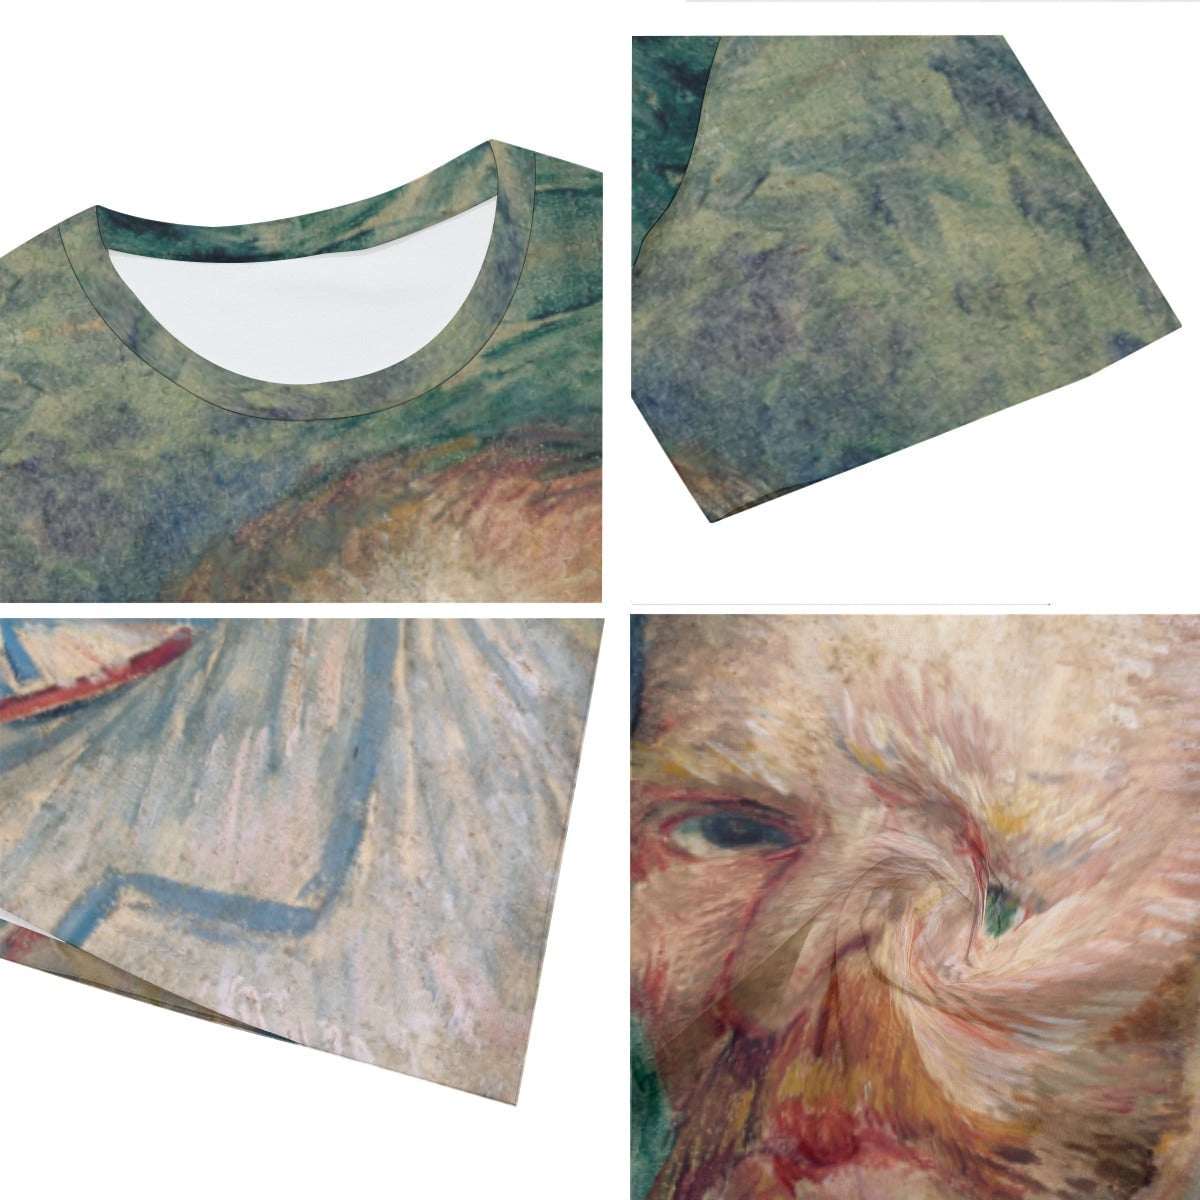 Vincent van Gogh’s Self-Portrait 1889 T-Shirt